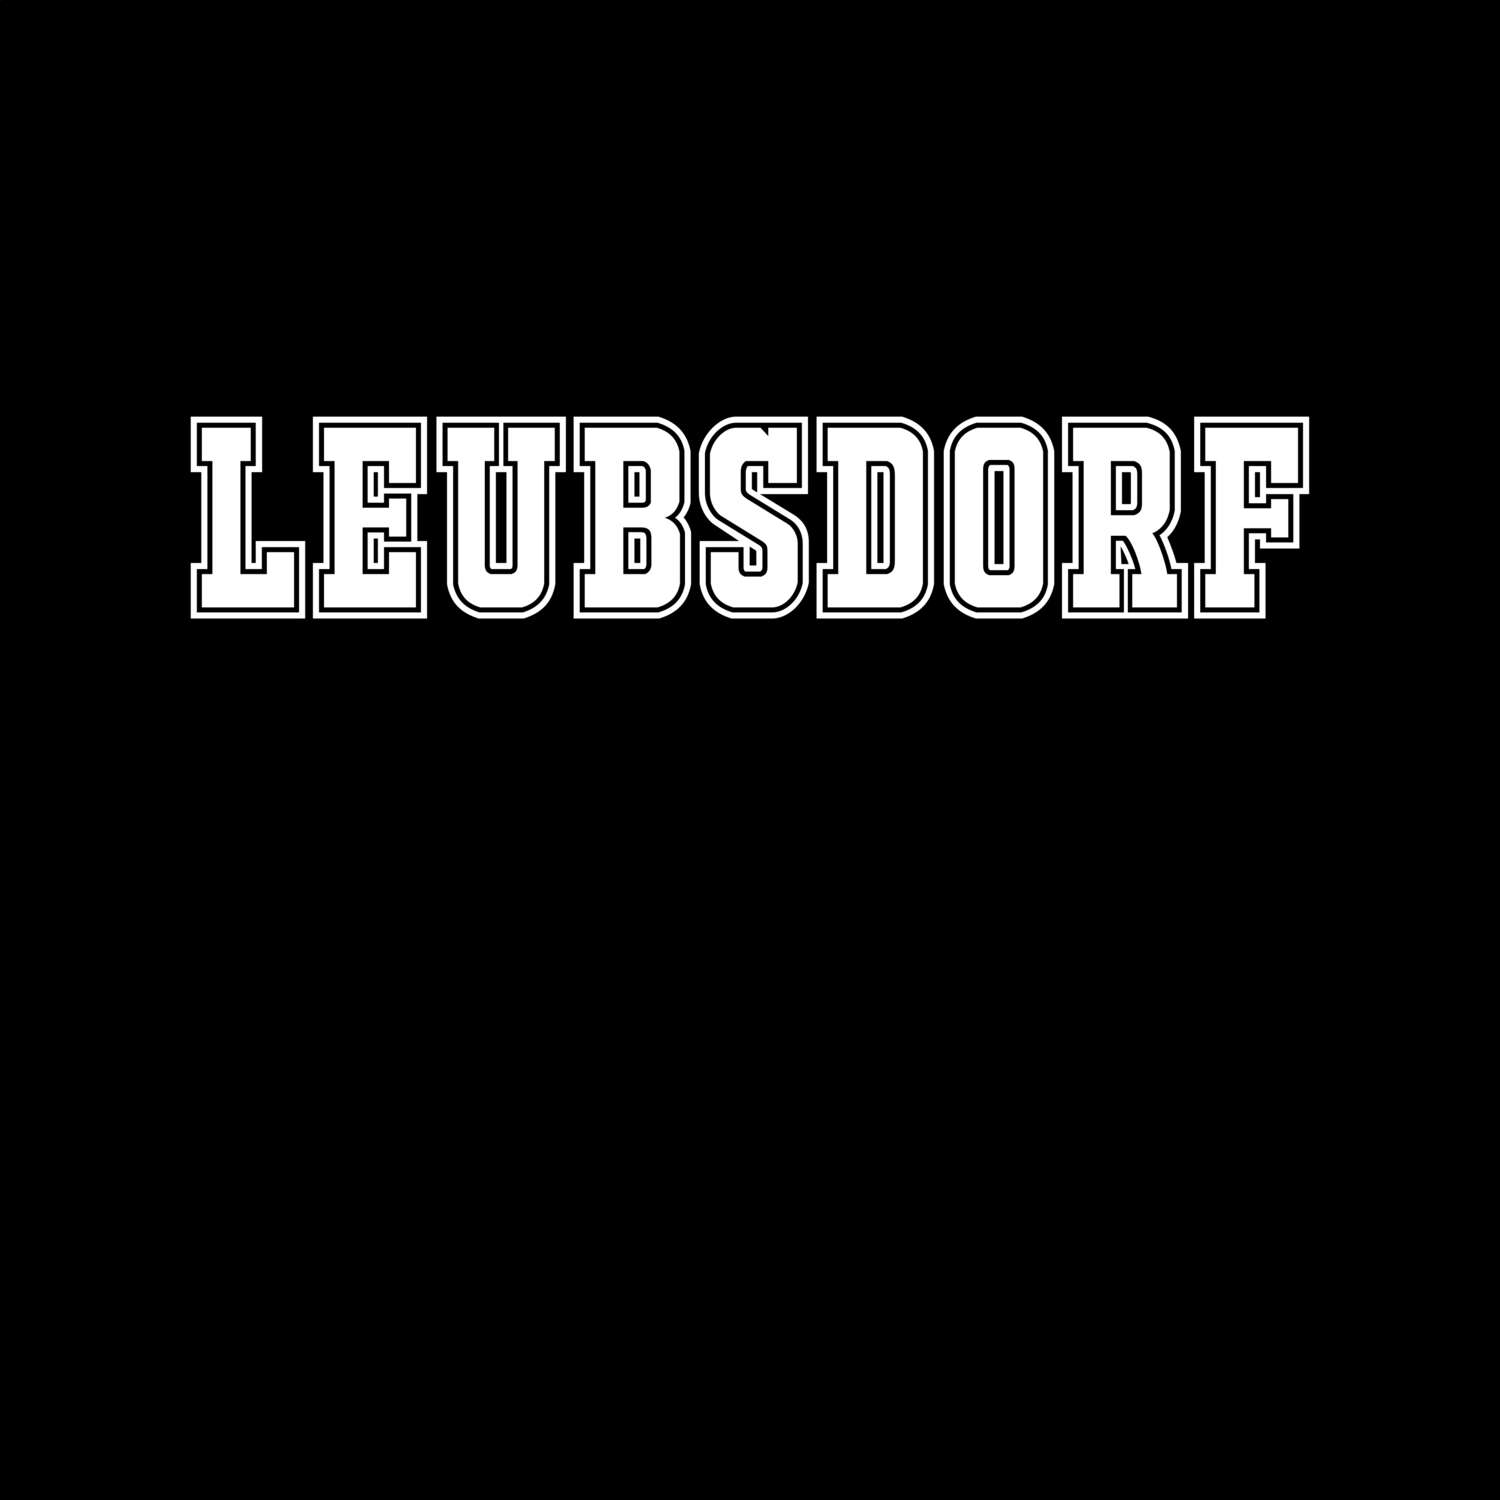 Leubsdorf T-Shirt »Classic«